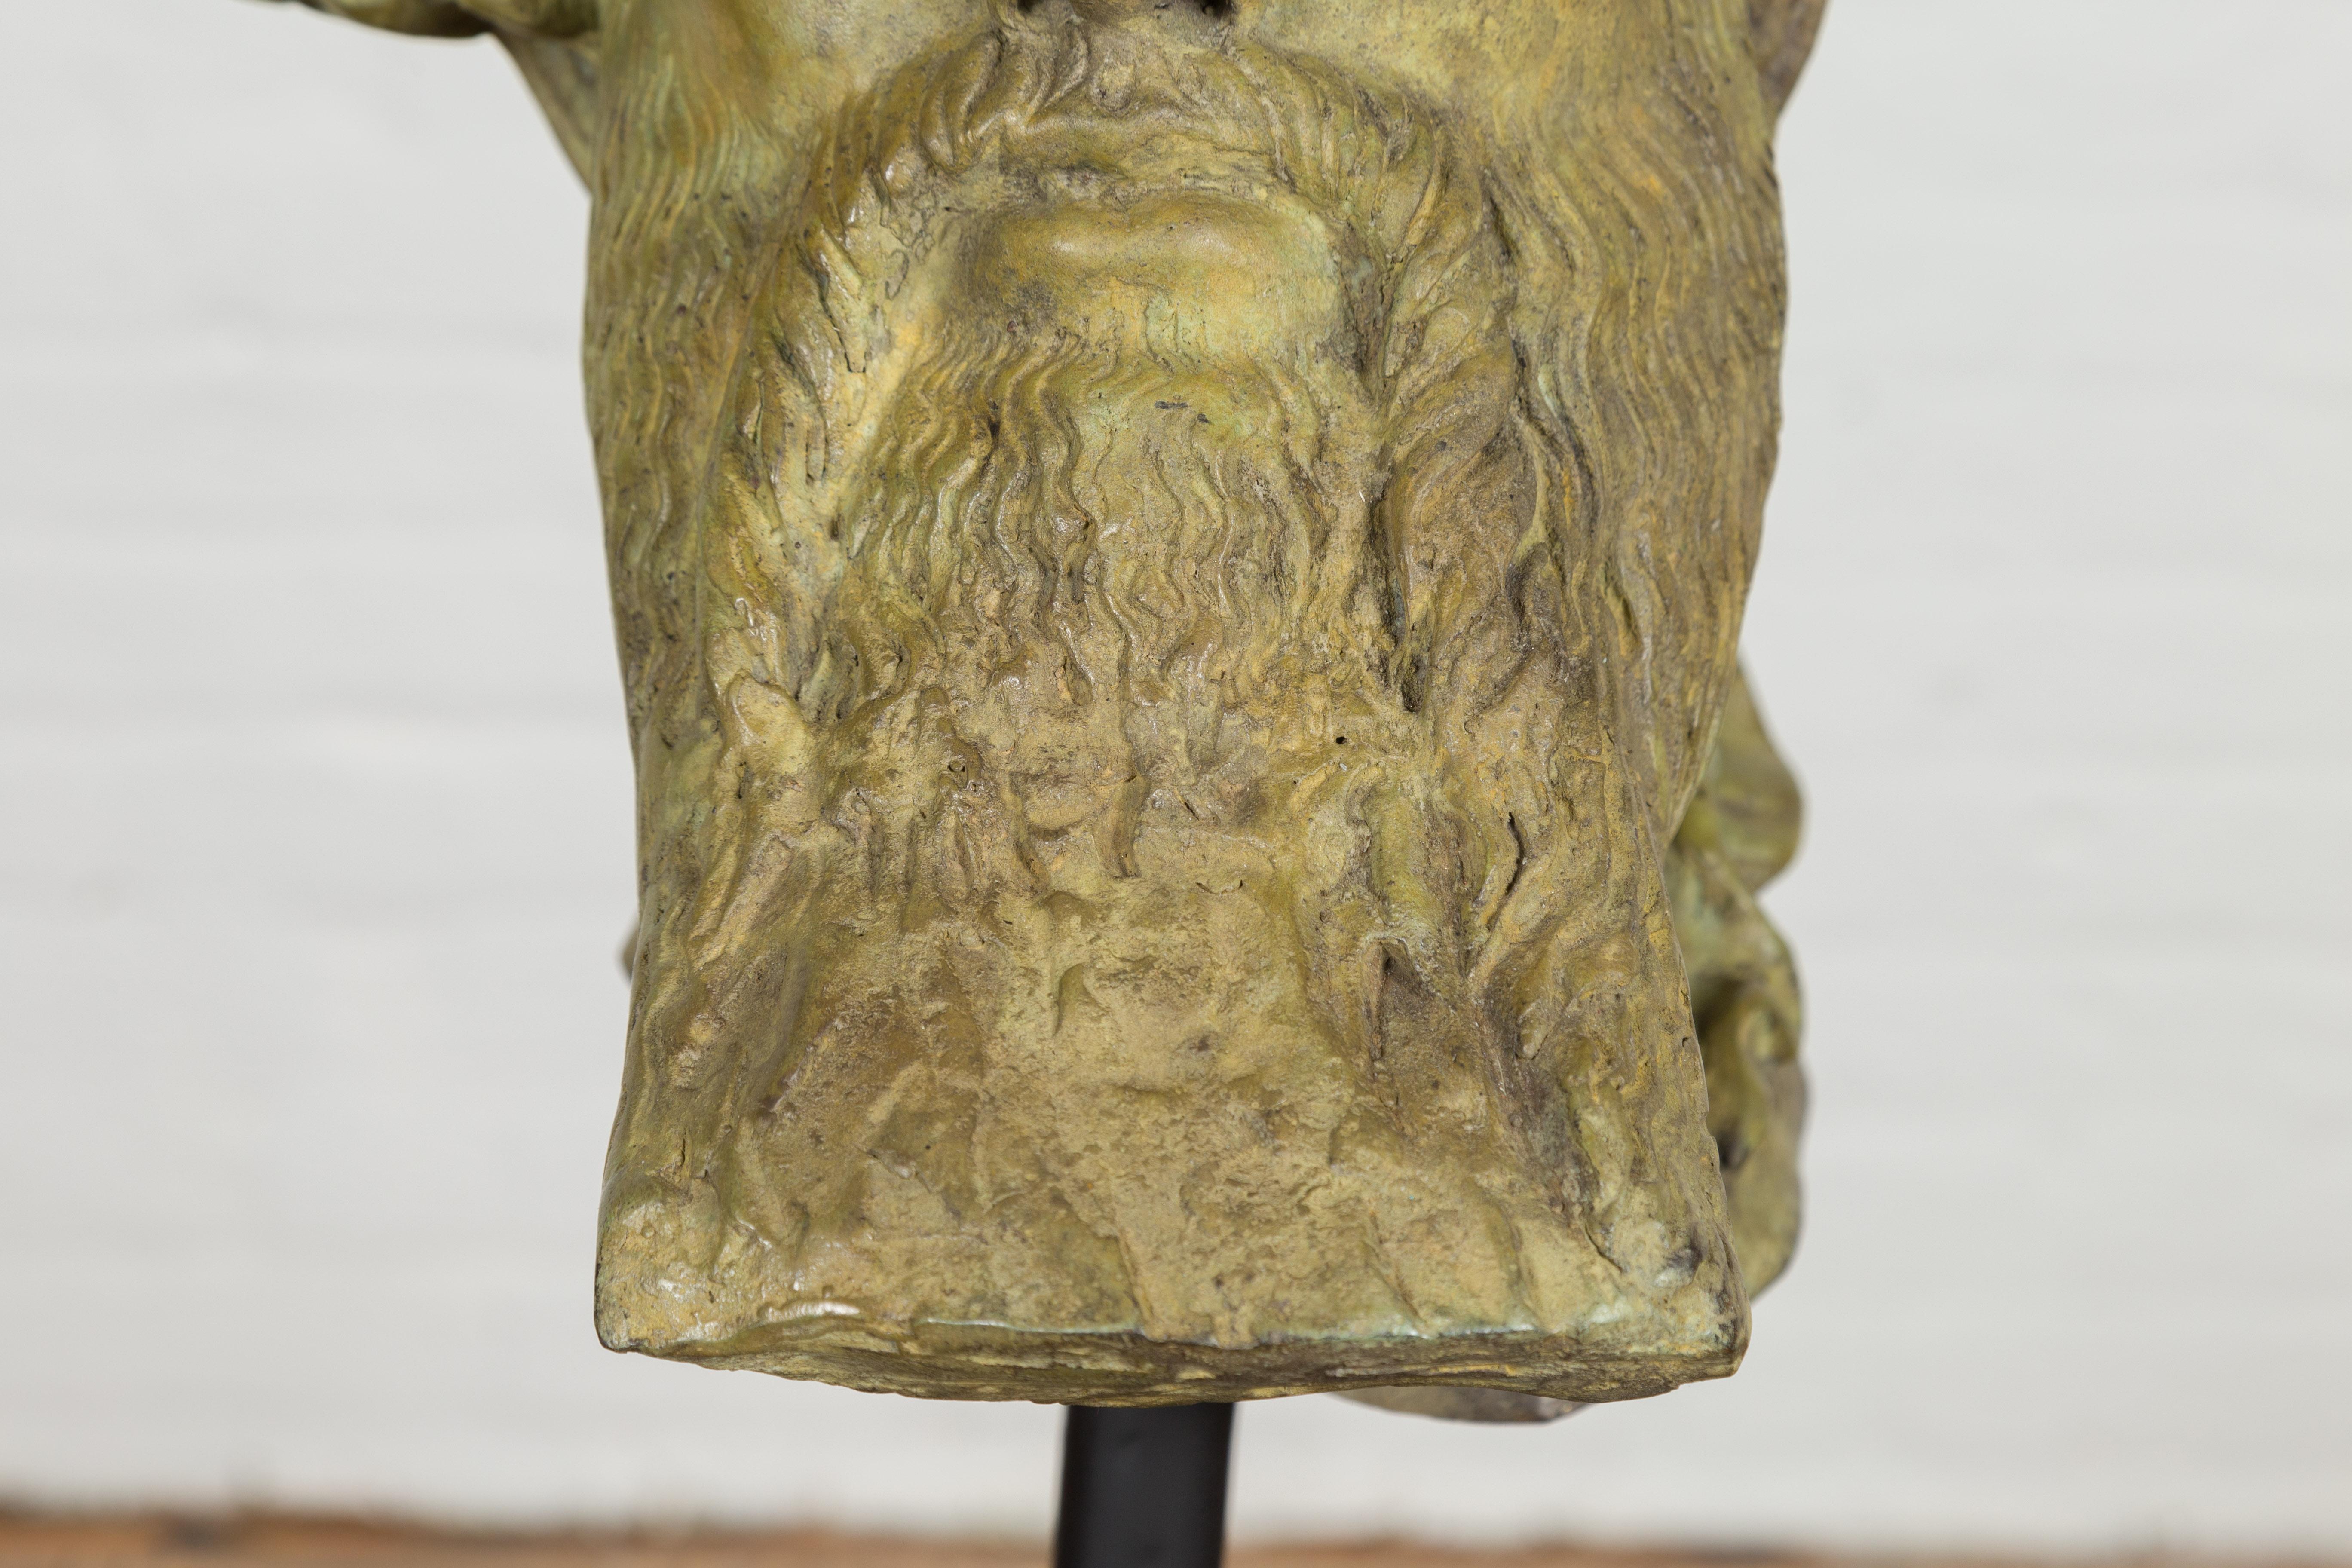 Hermes, Greek God Bronze Sculpture with Verde Patina on Custom Base 2